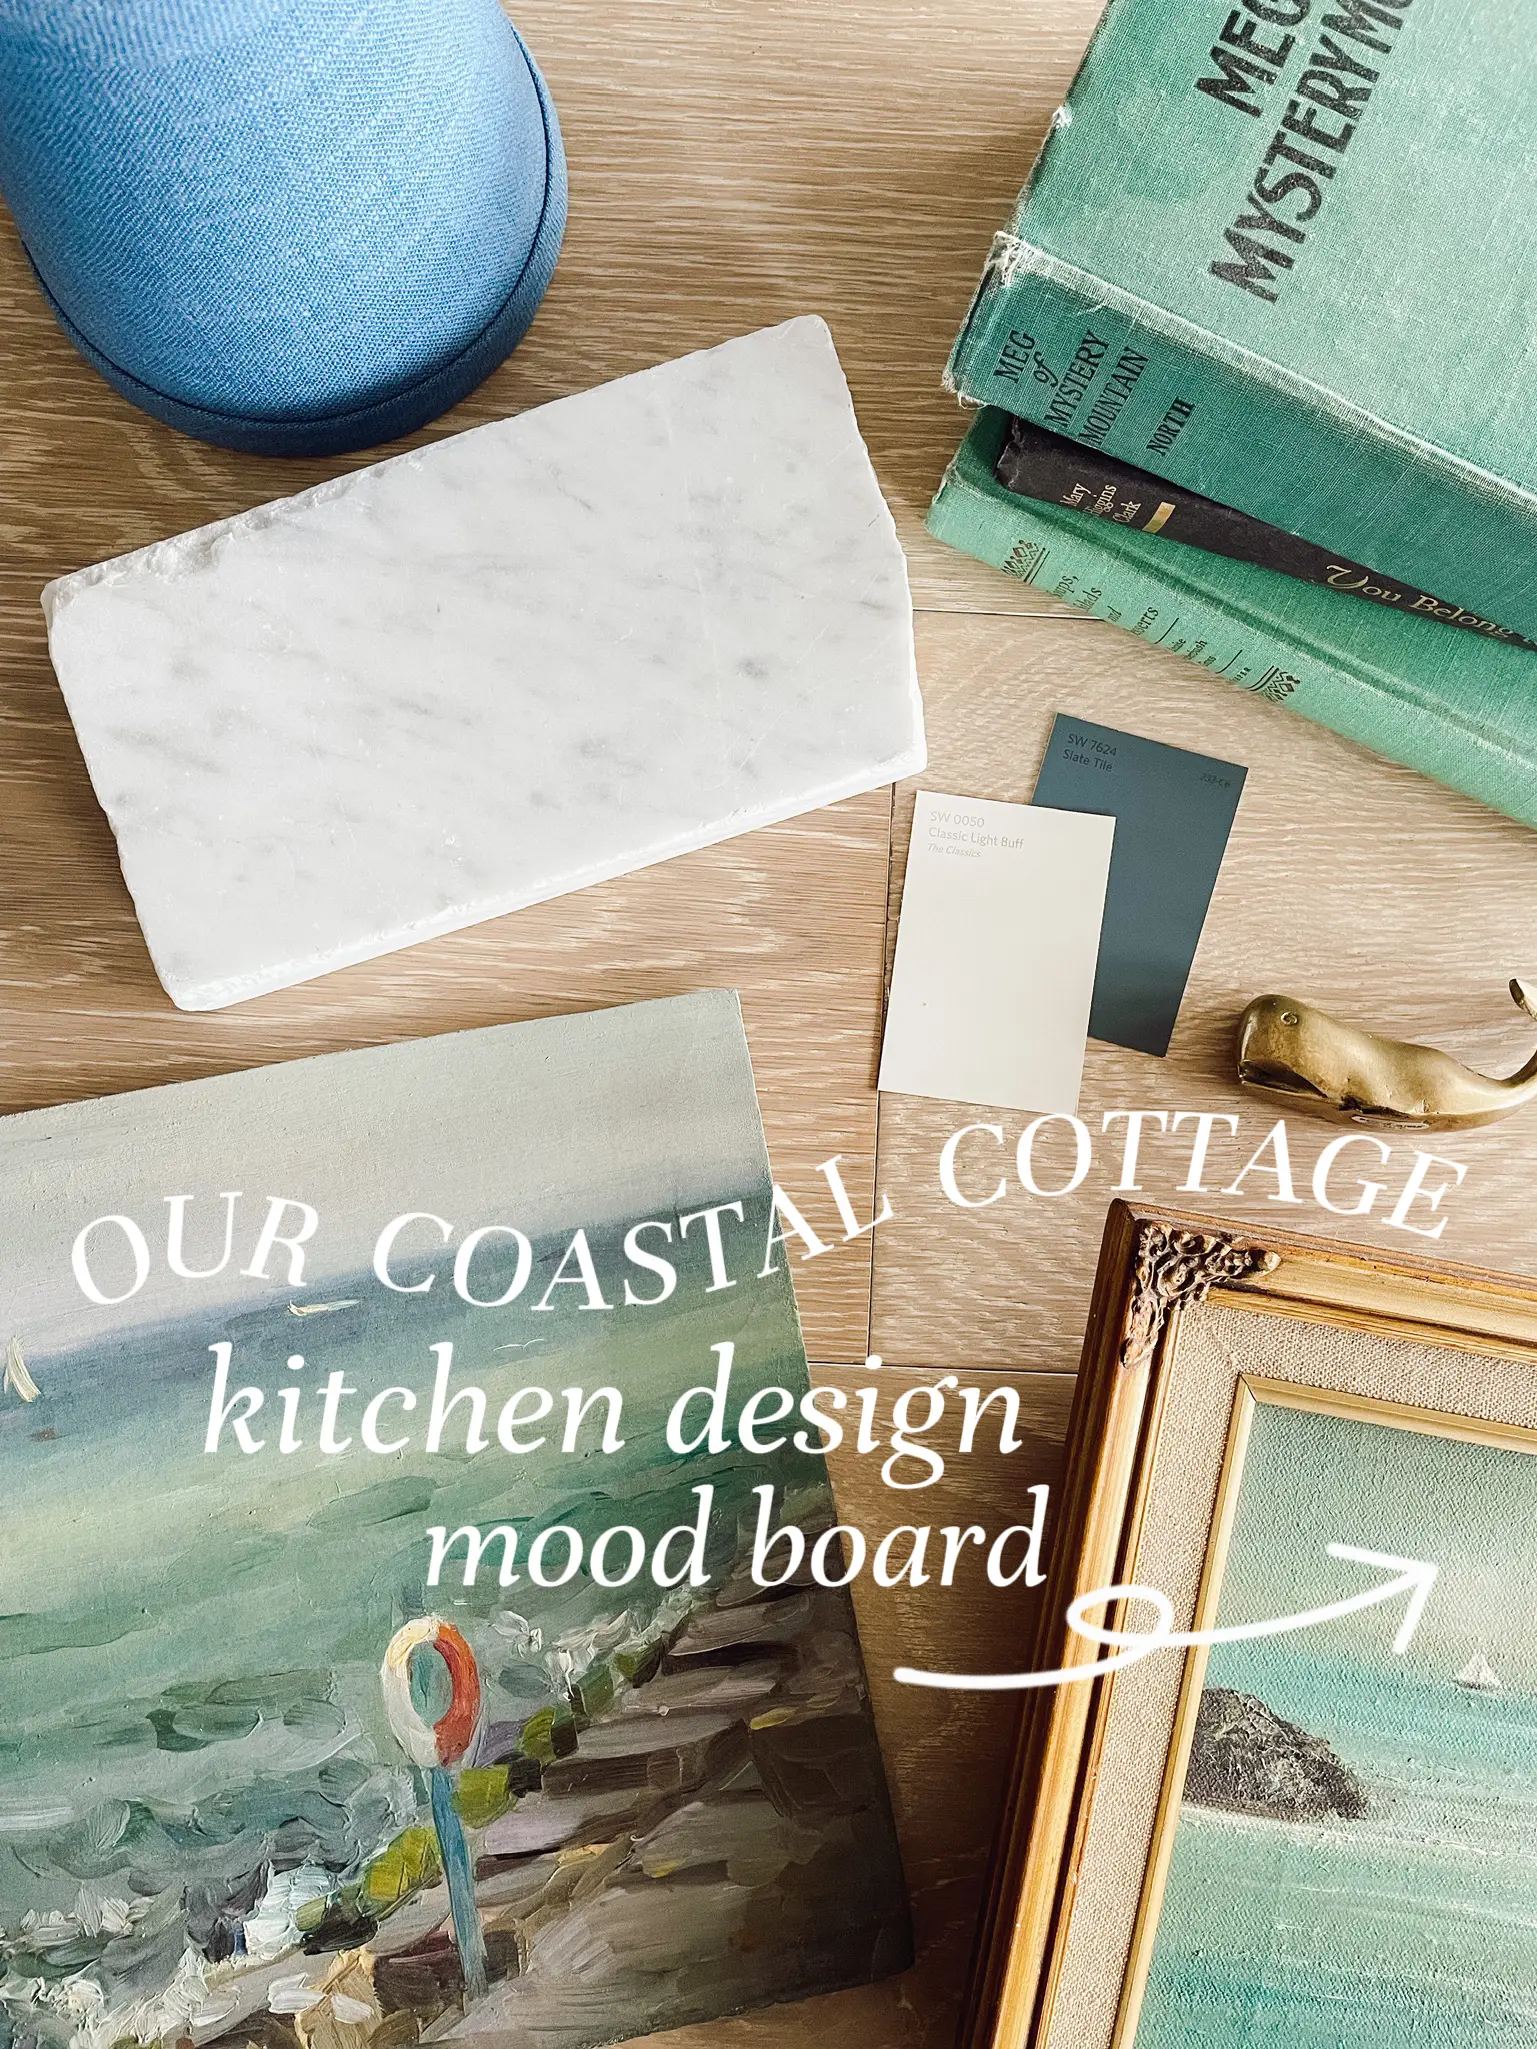 My Coastal Cottage Kitchen Design Mood Board ⛵️🌊's images